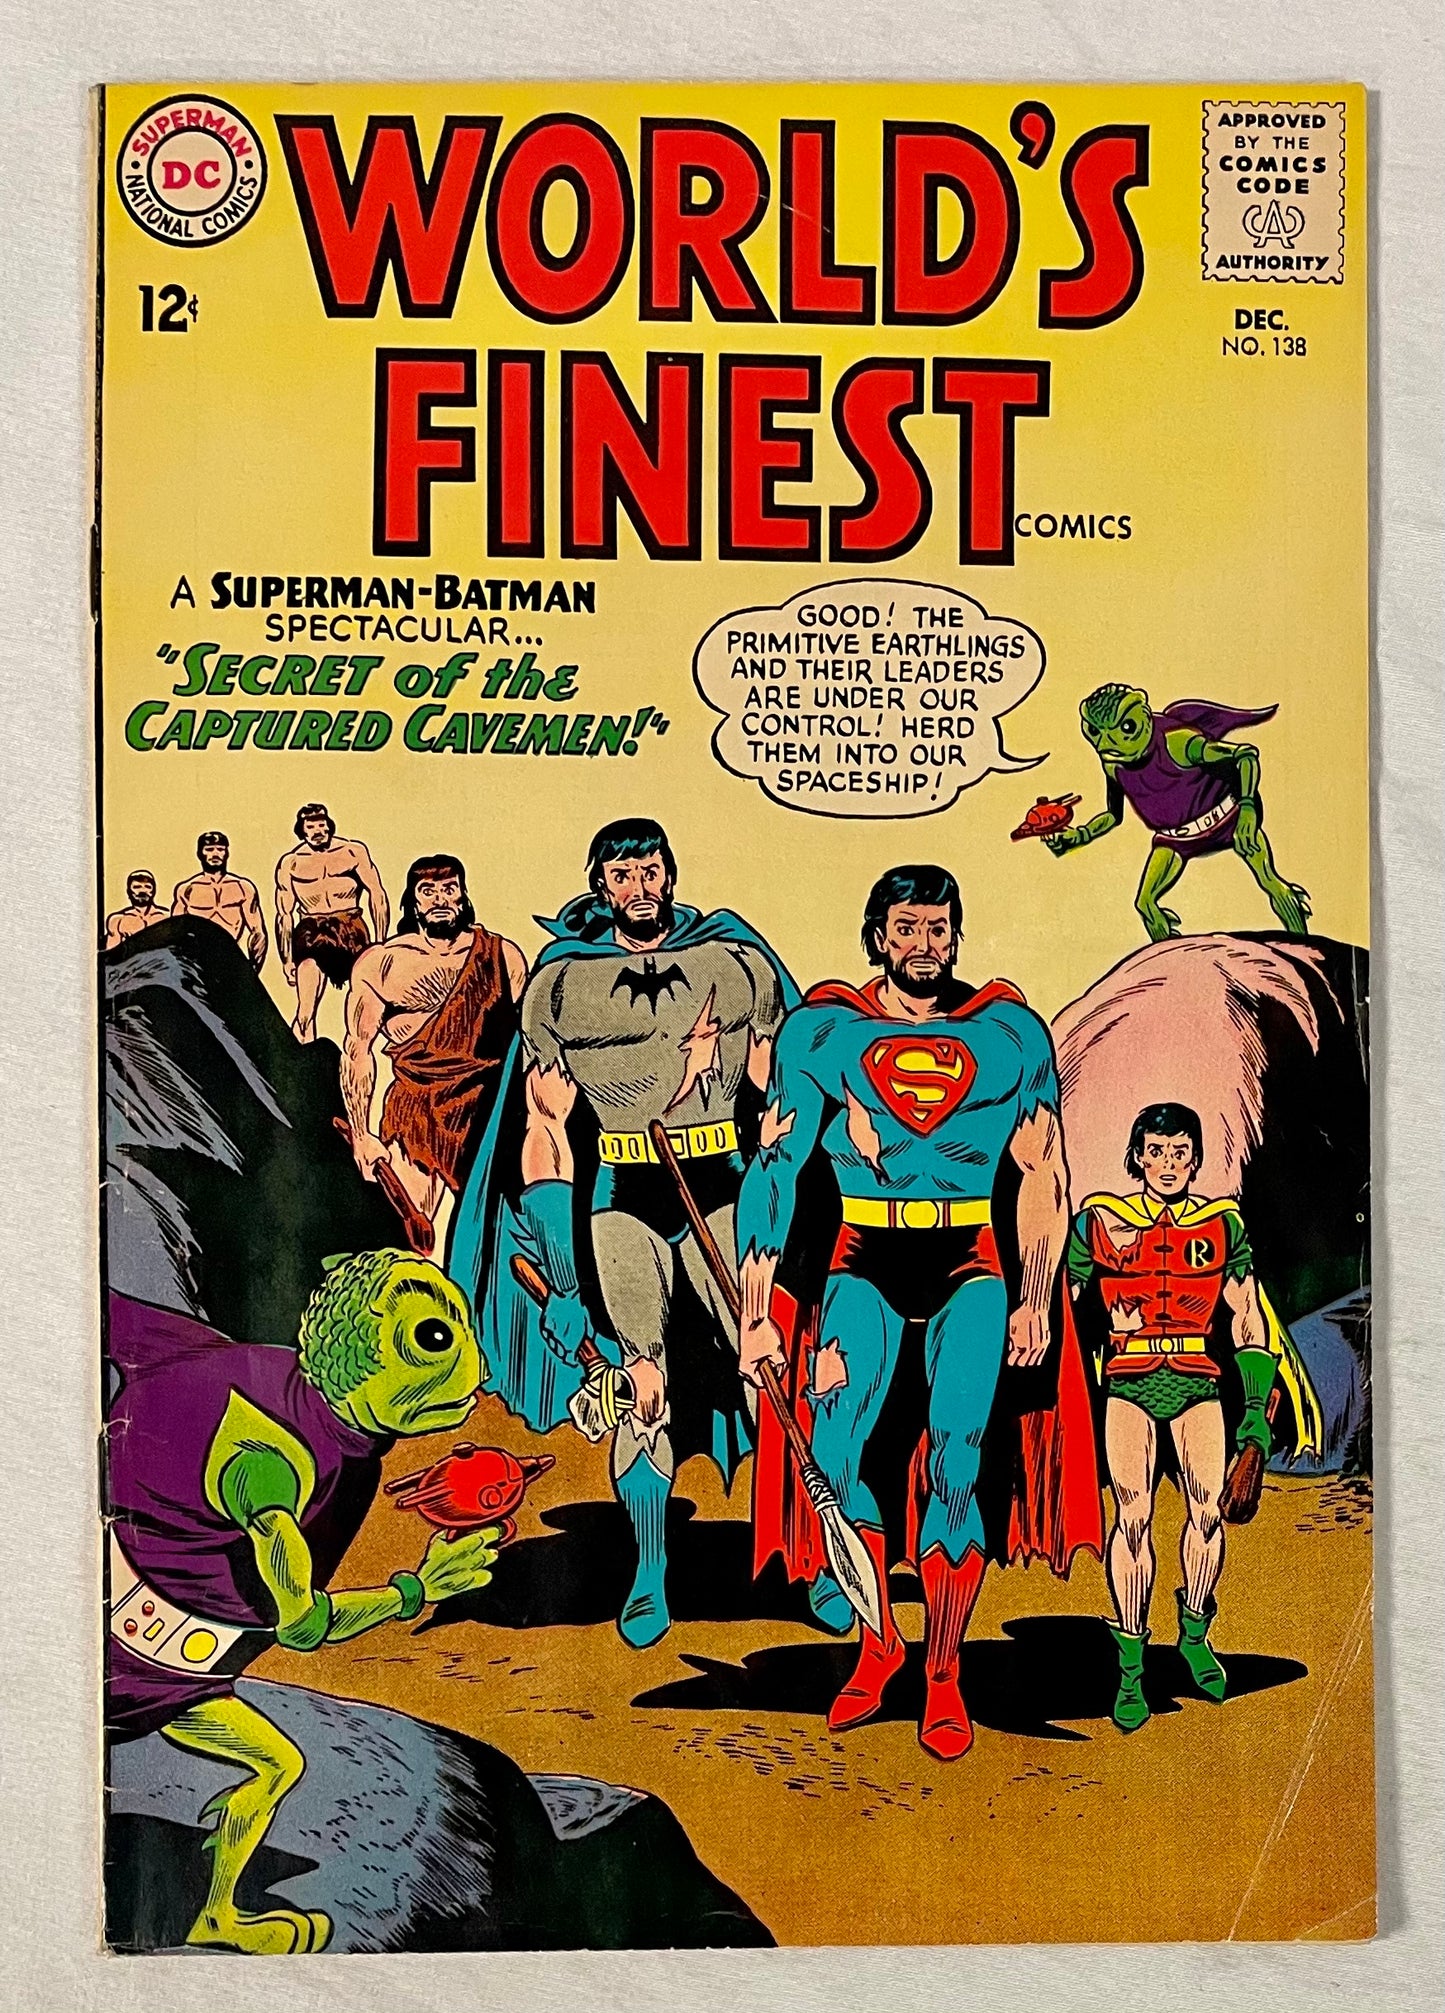 DC Comics Word's Finest No. 138